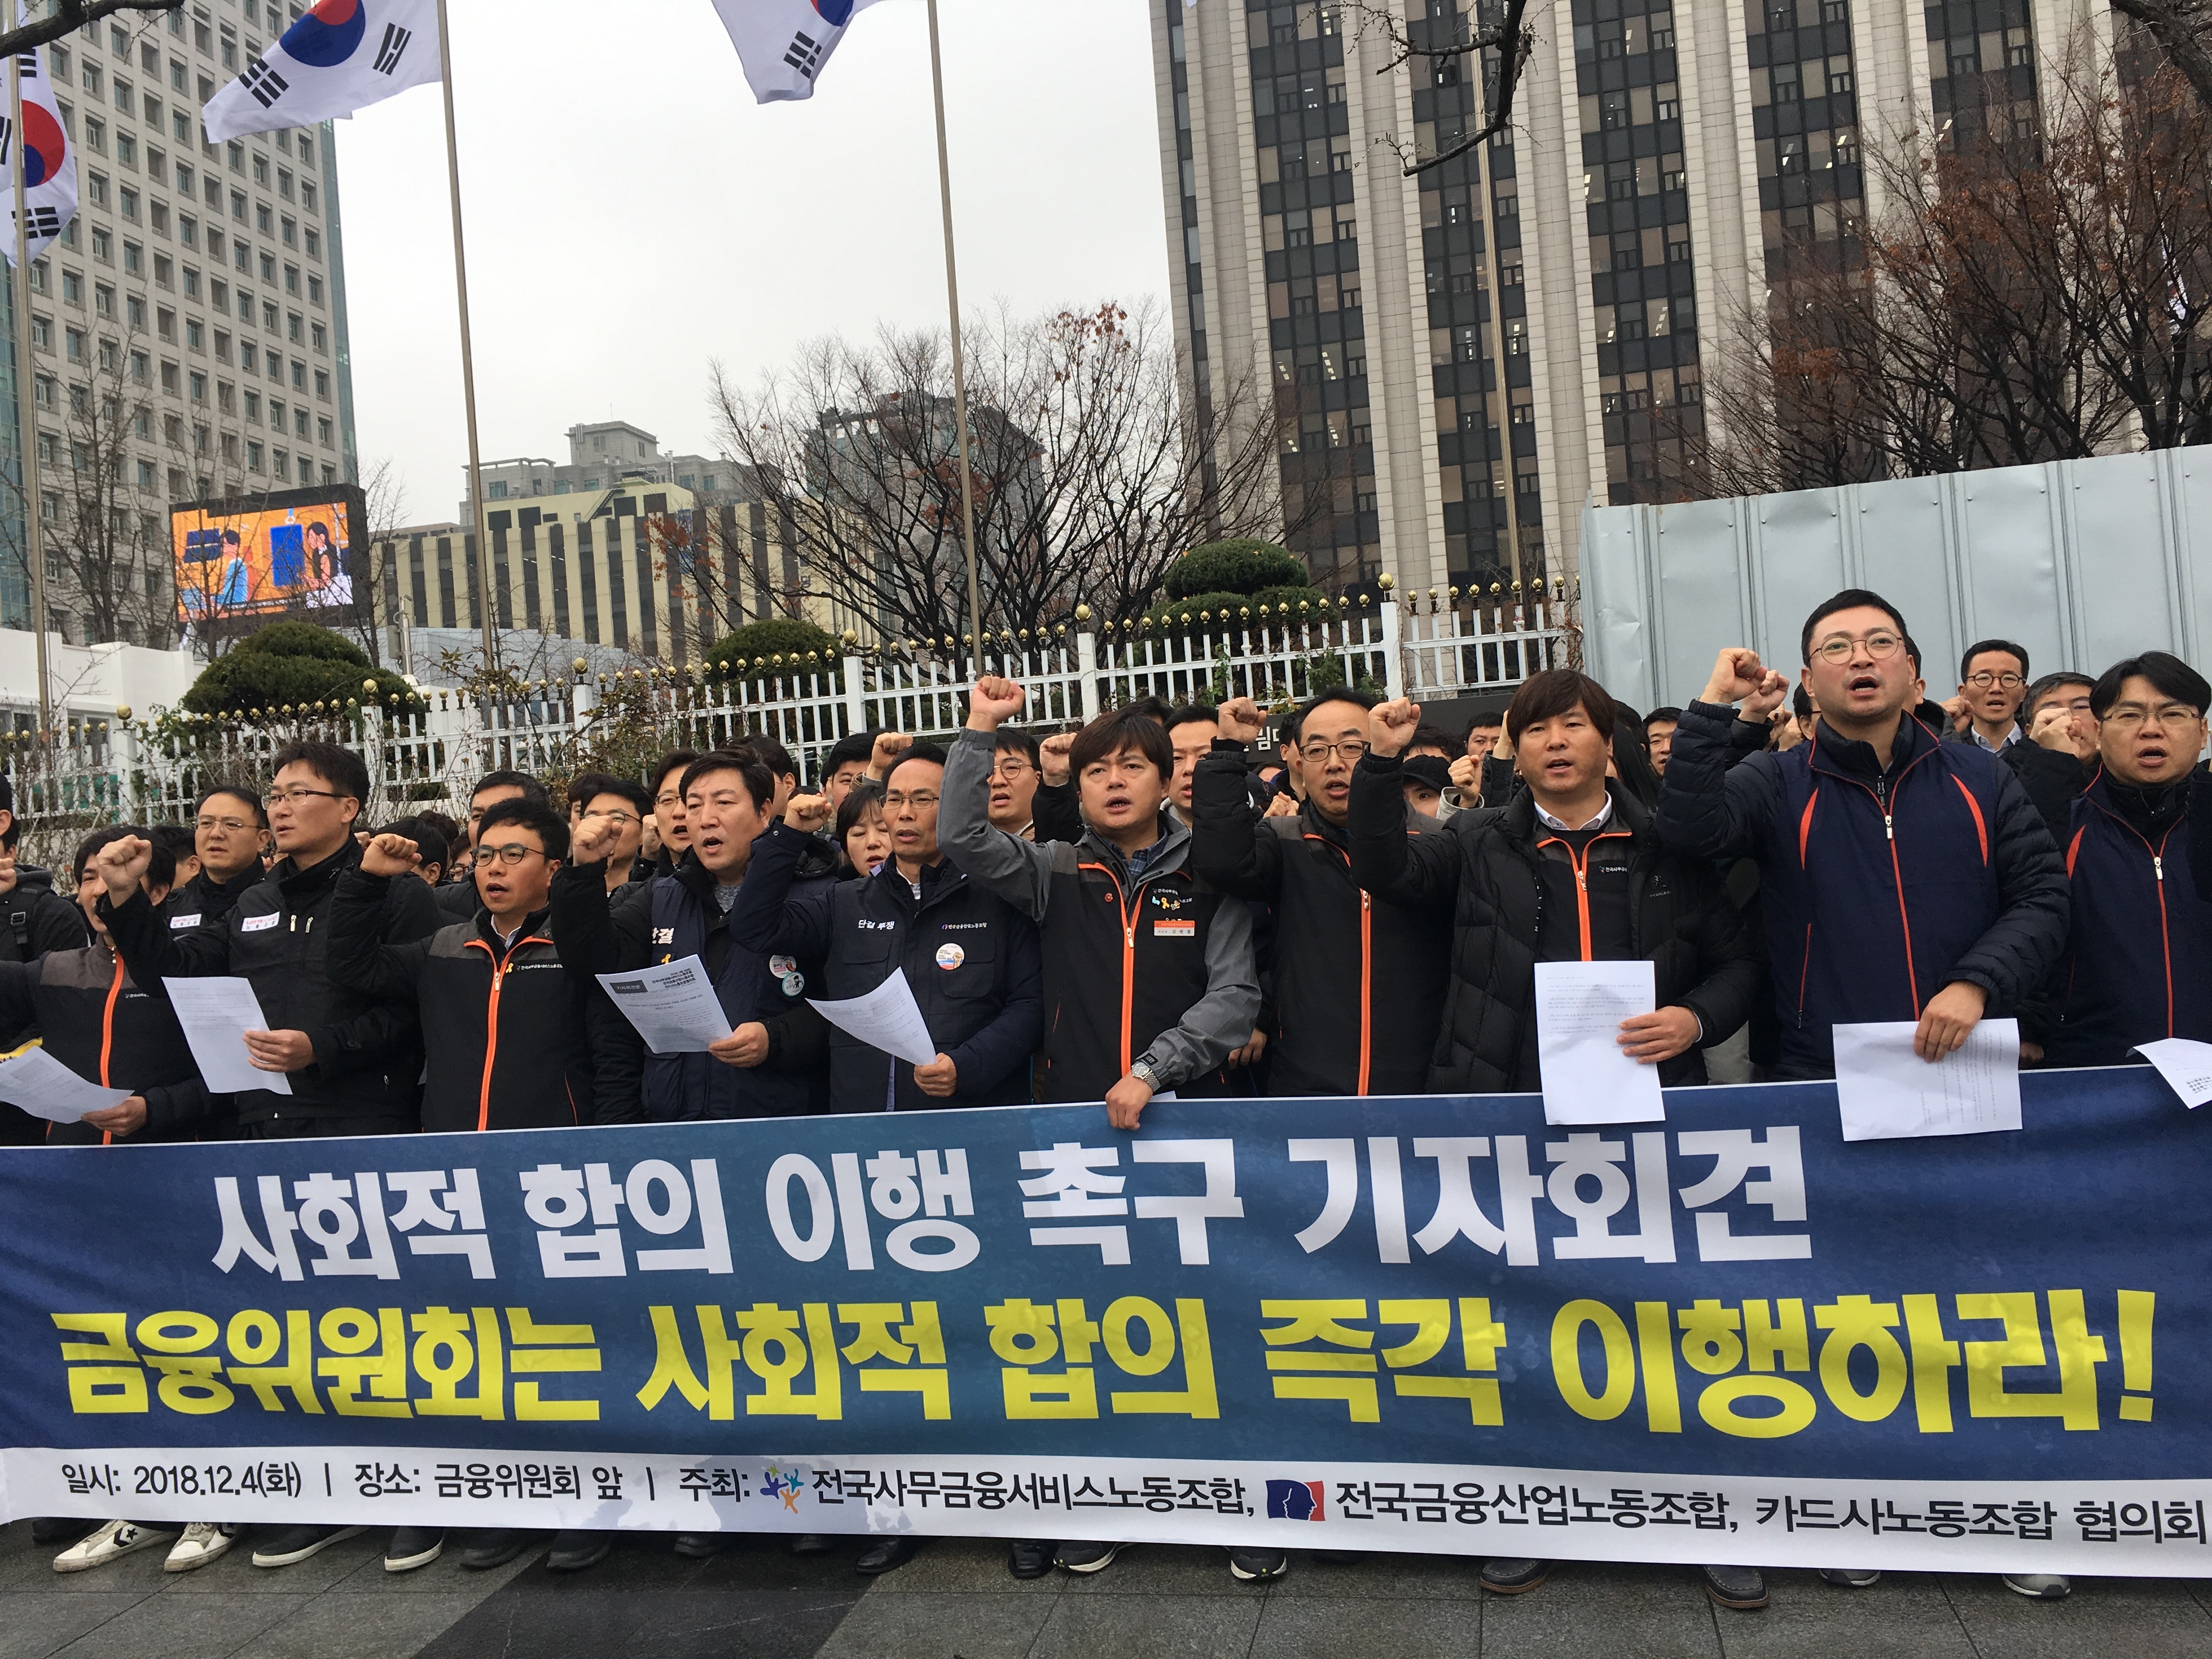 지난해 12월 카드노조가 서울 광화문 정부종합청사 앞에서 기자회견을 진행하고 있다. / 사진 = 유선희 기자